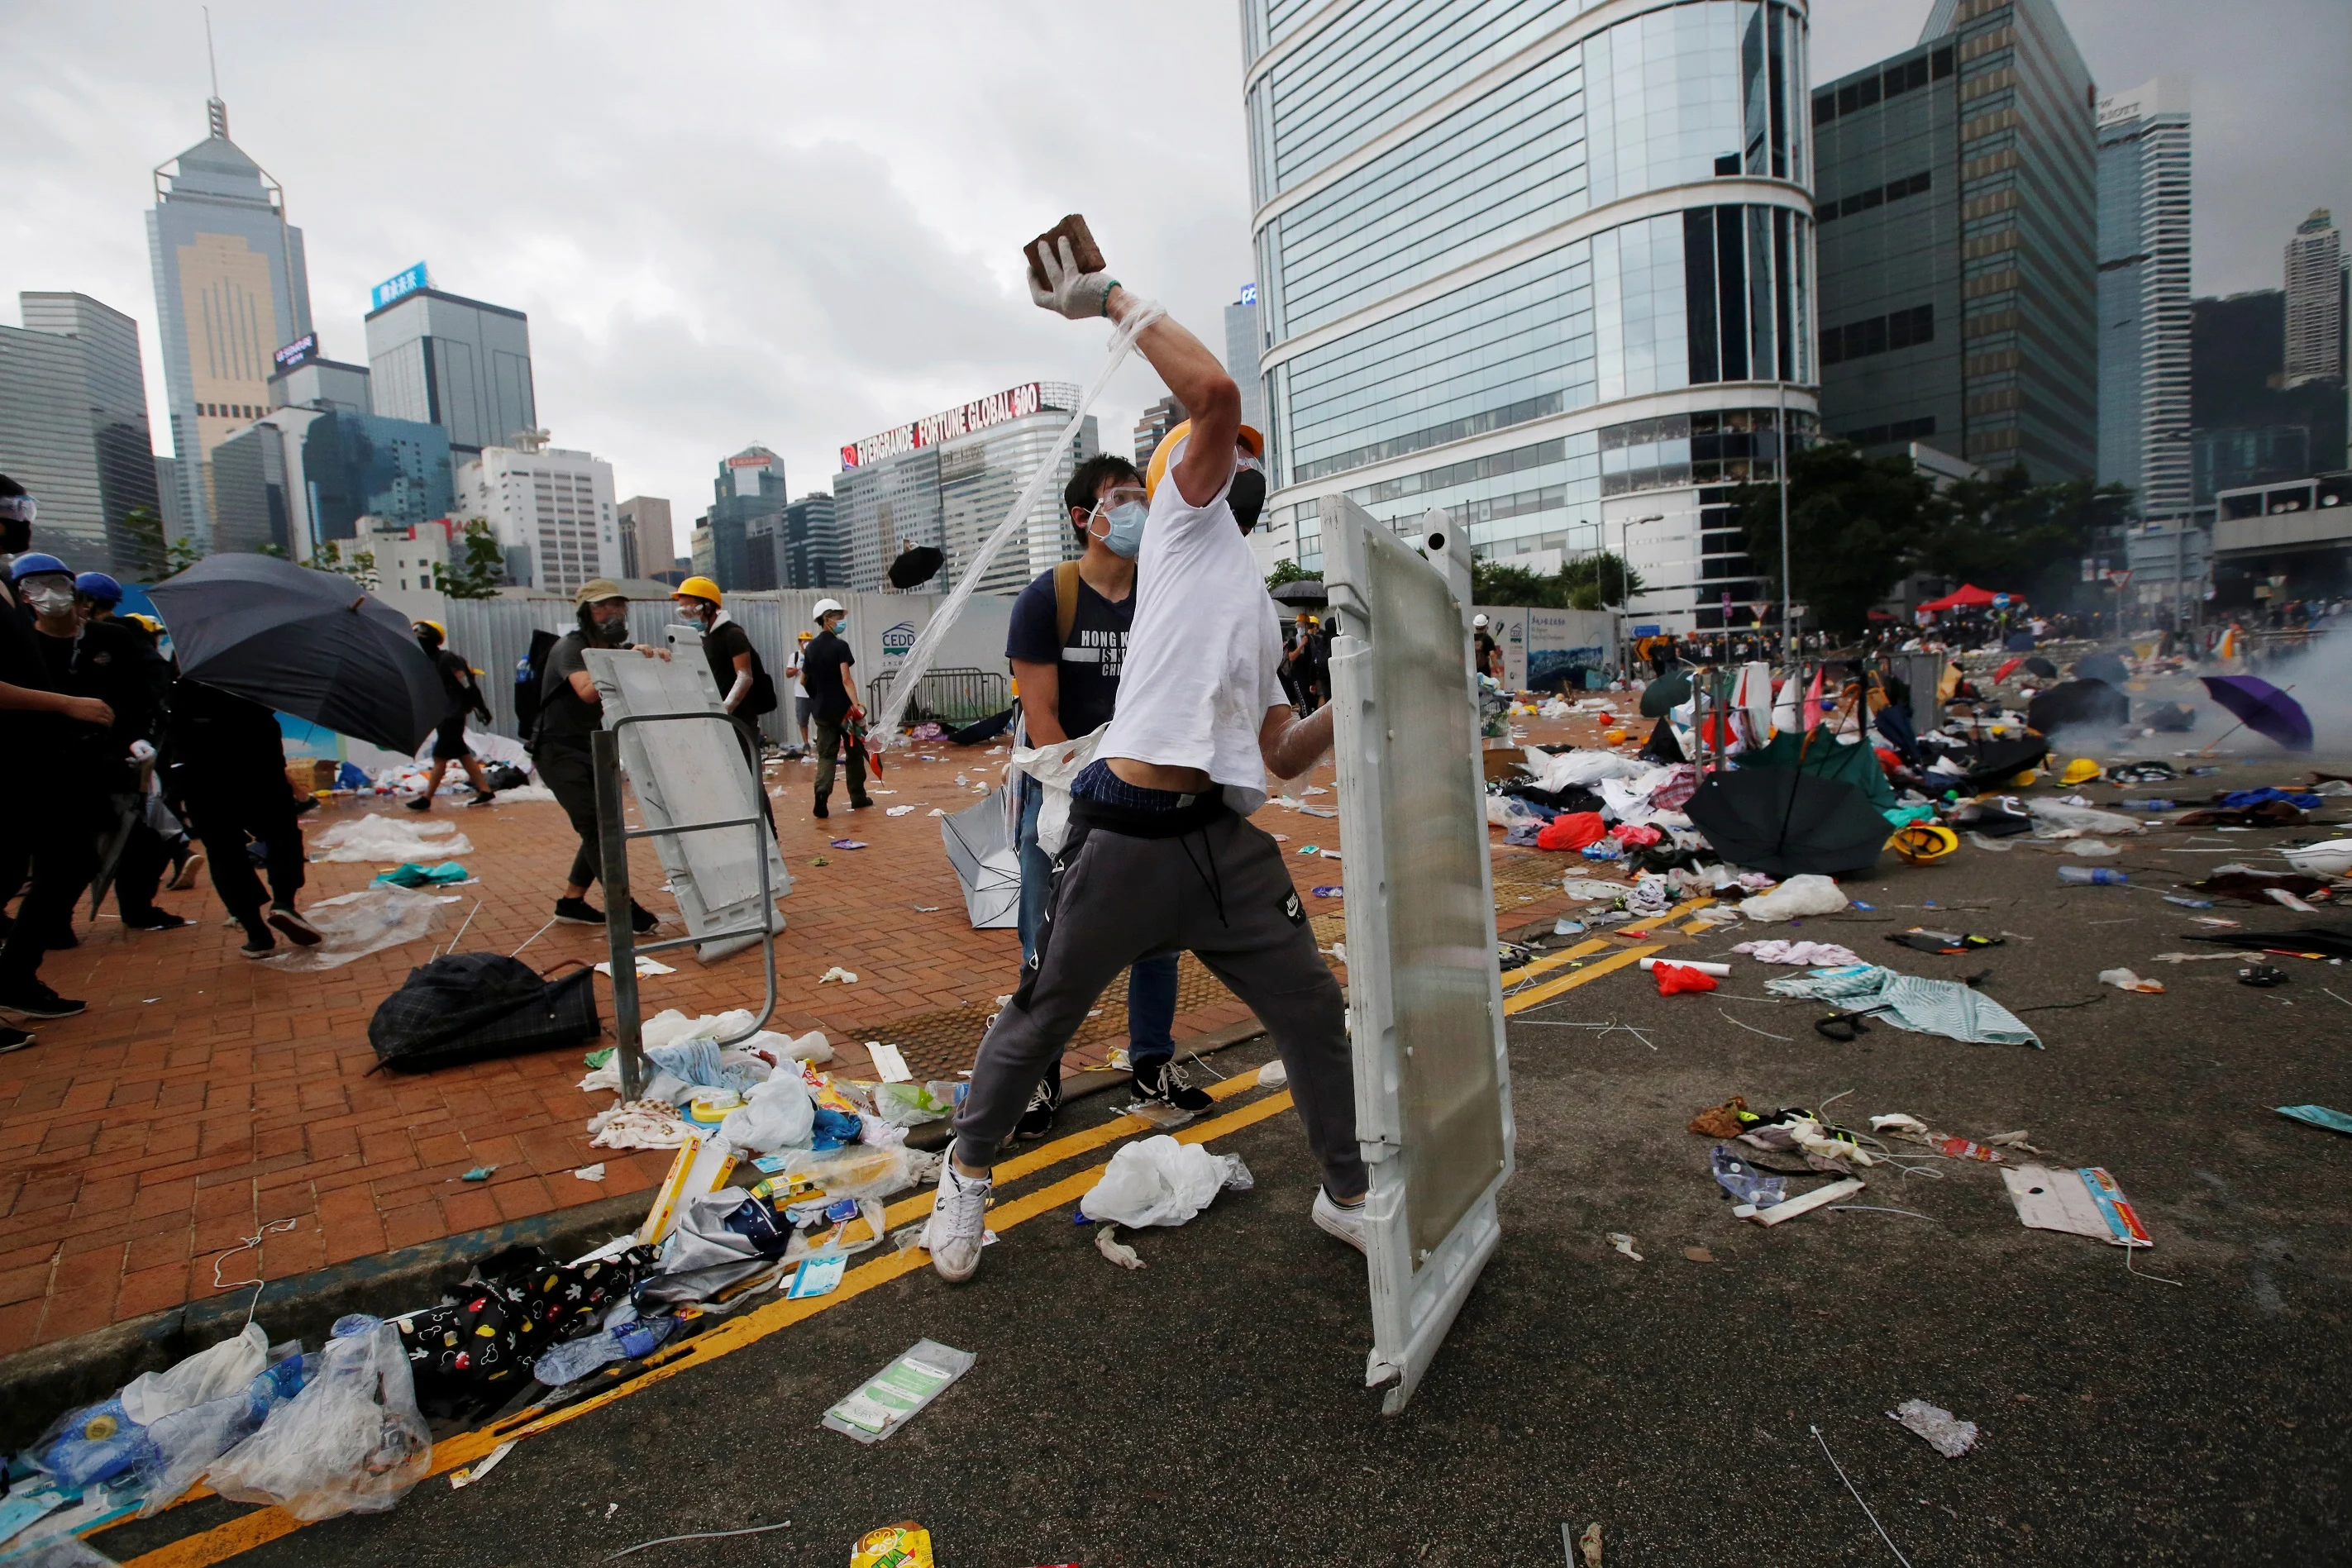 מפגינים בהונג קונג משליכים לבנים ברחובות